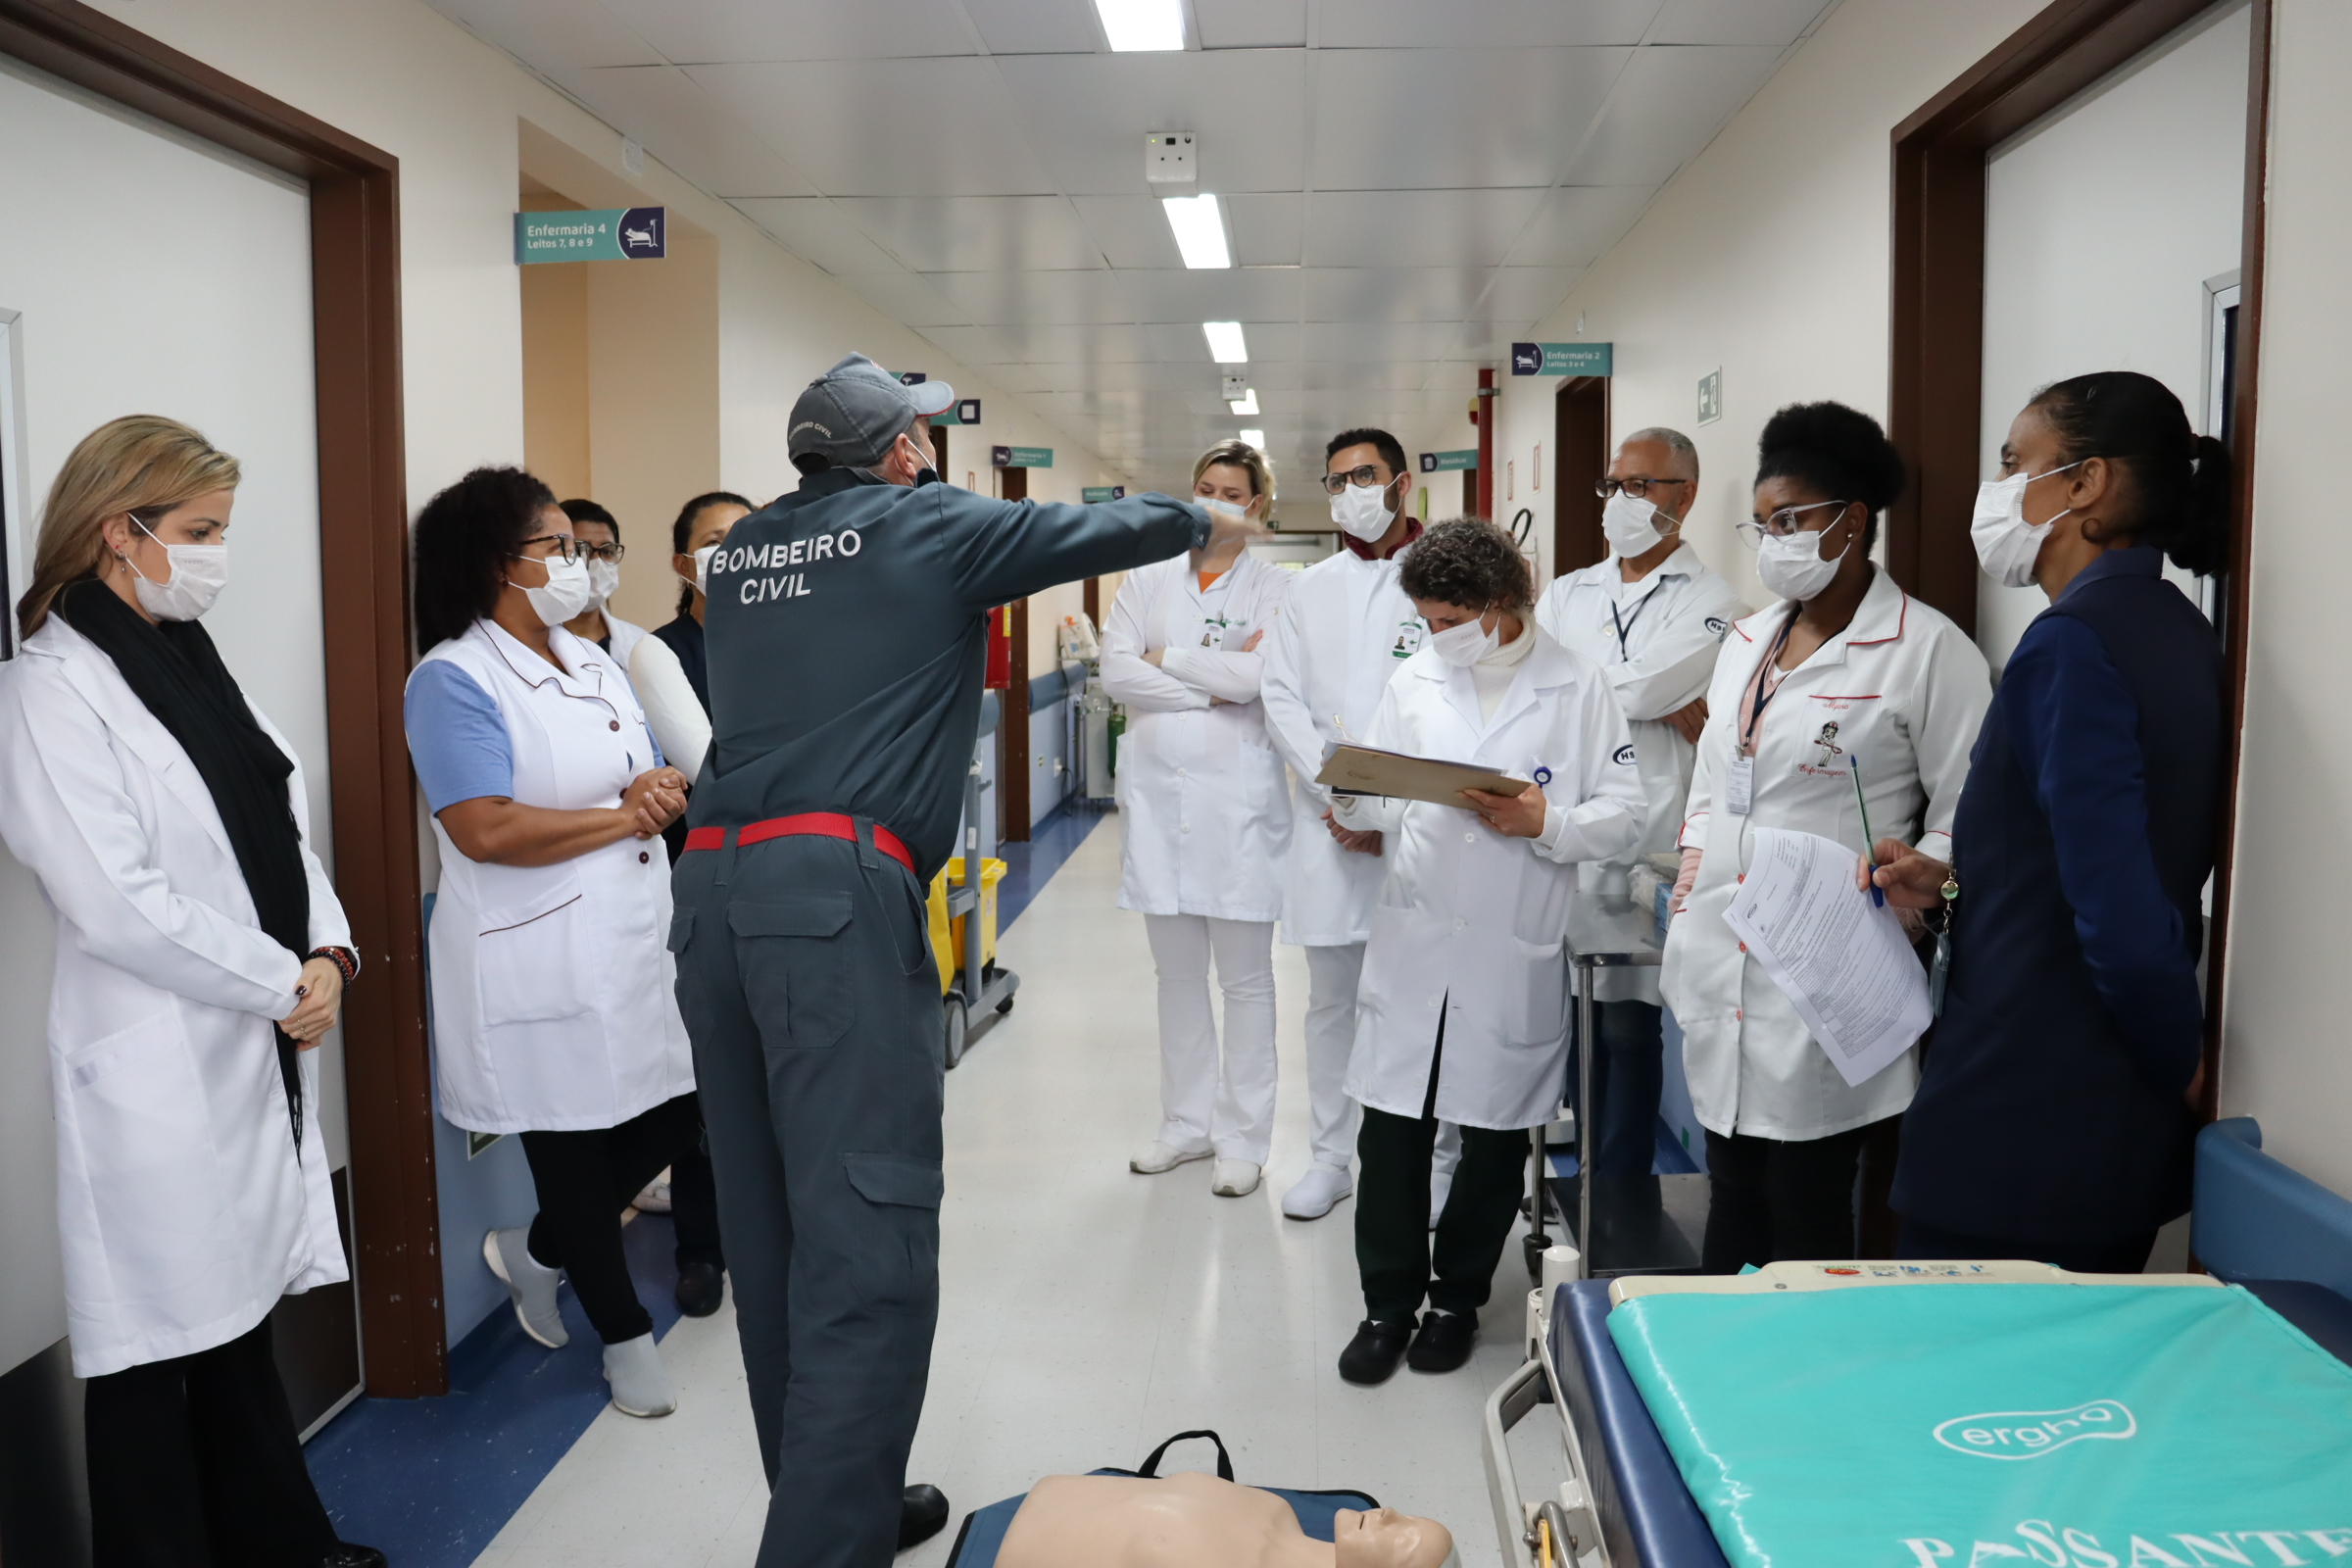 Imagem panorâmica da equipe no corredor do hospital em pé recebendo as instruções do bombeiro civil, que gesticula apontando uma direção